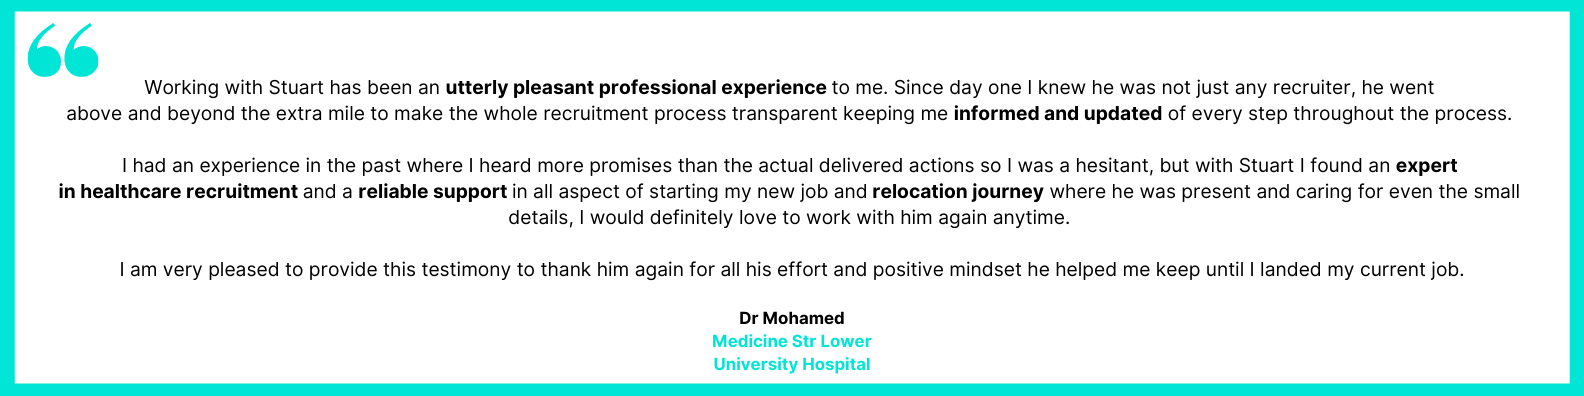 Dr Mohamed Testimonial